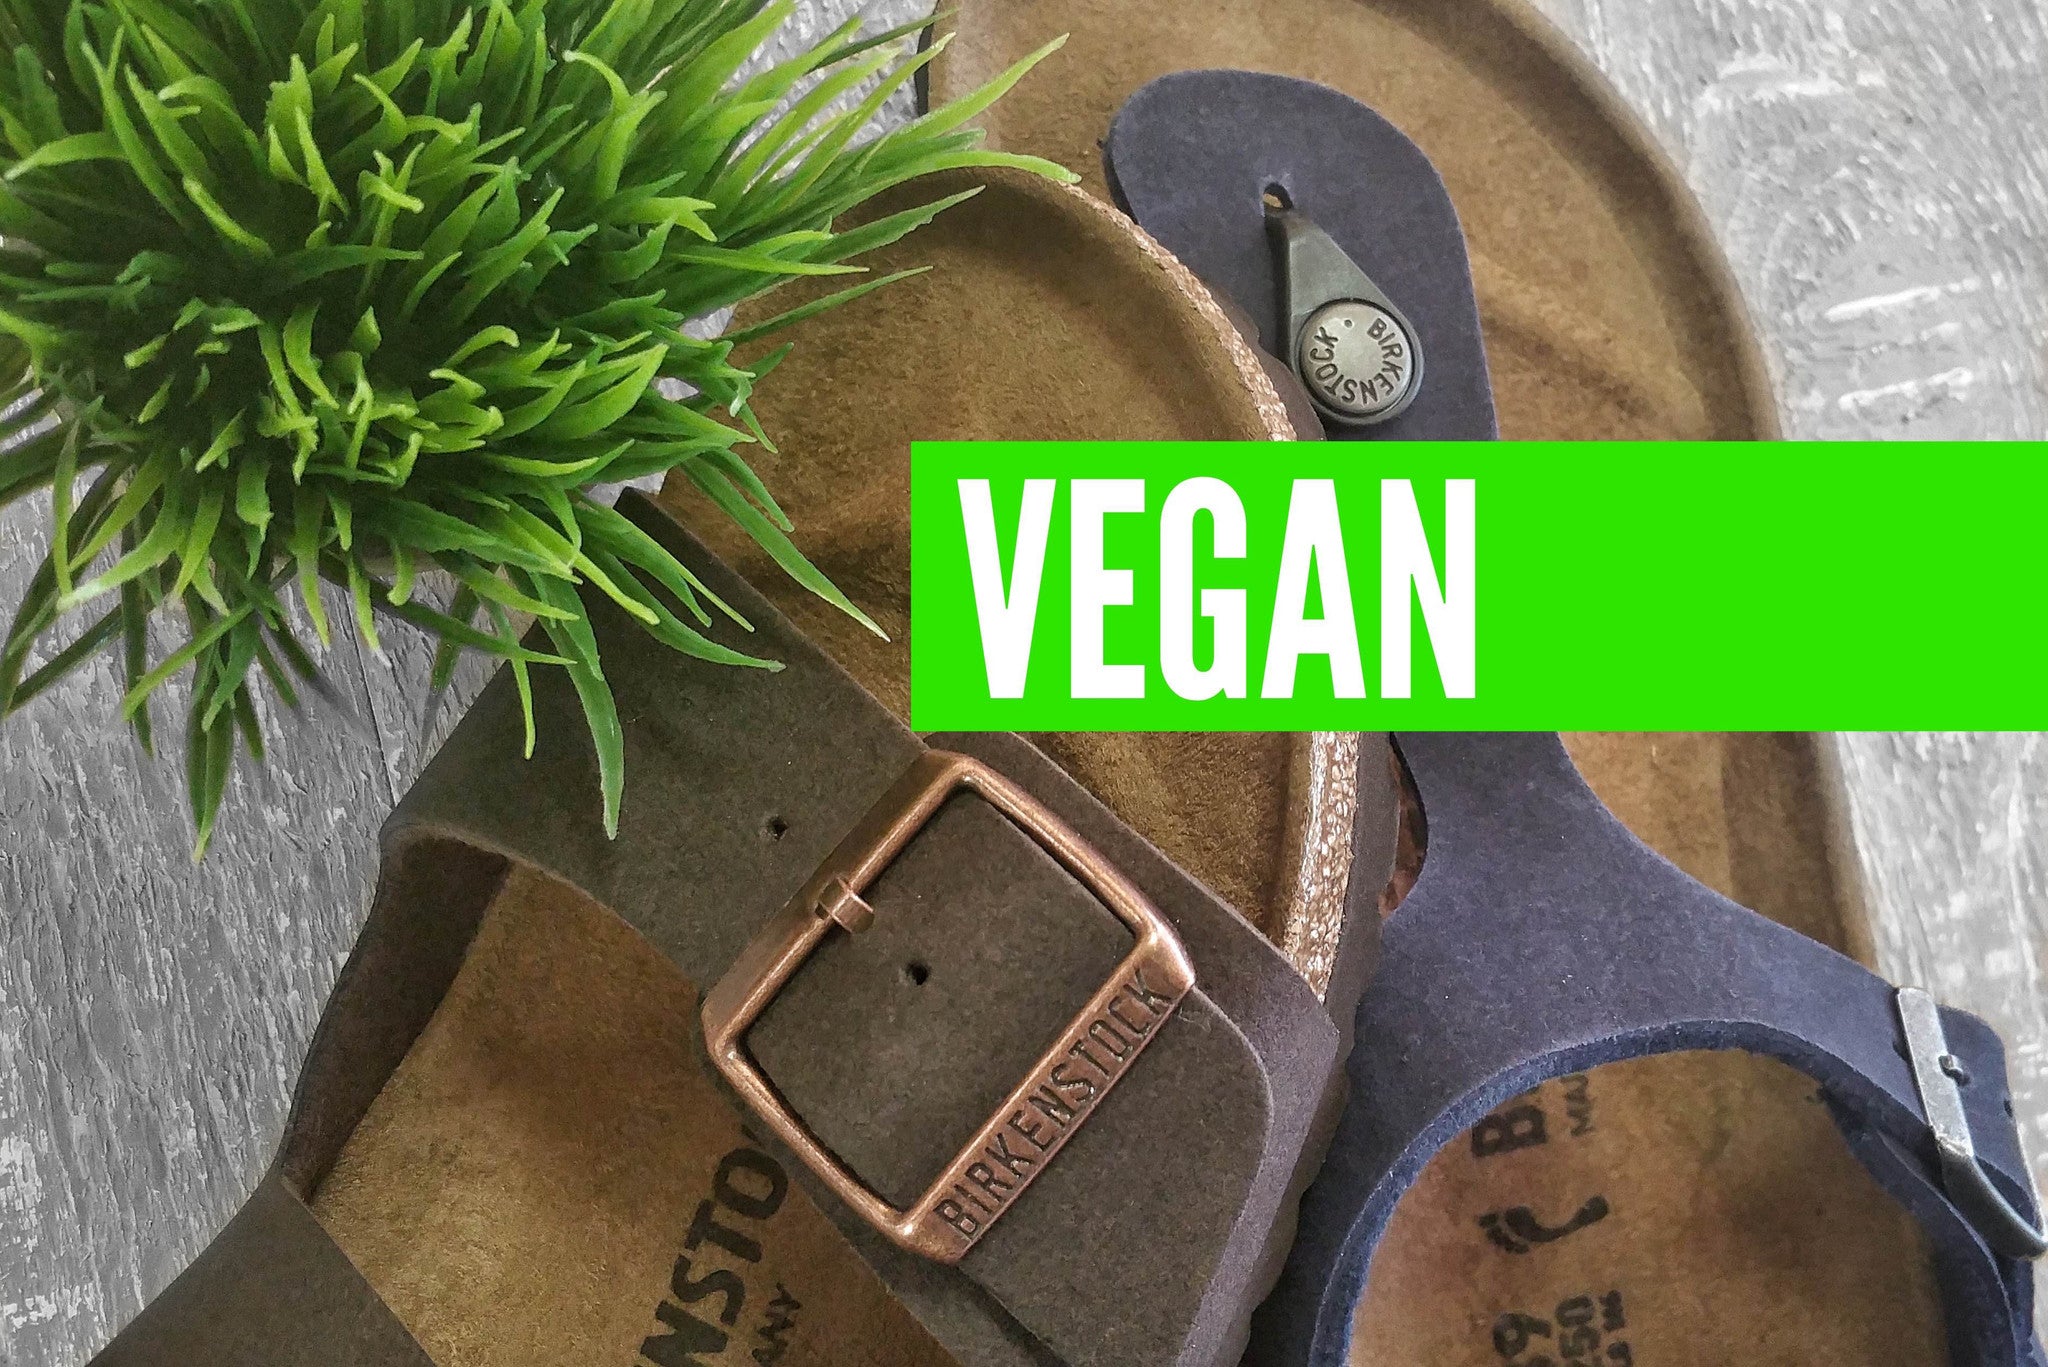 Vegan Birkenstock Sandals Have Arrived!